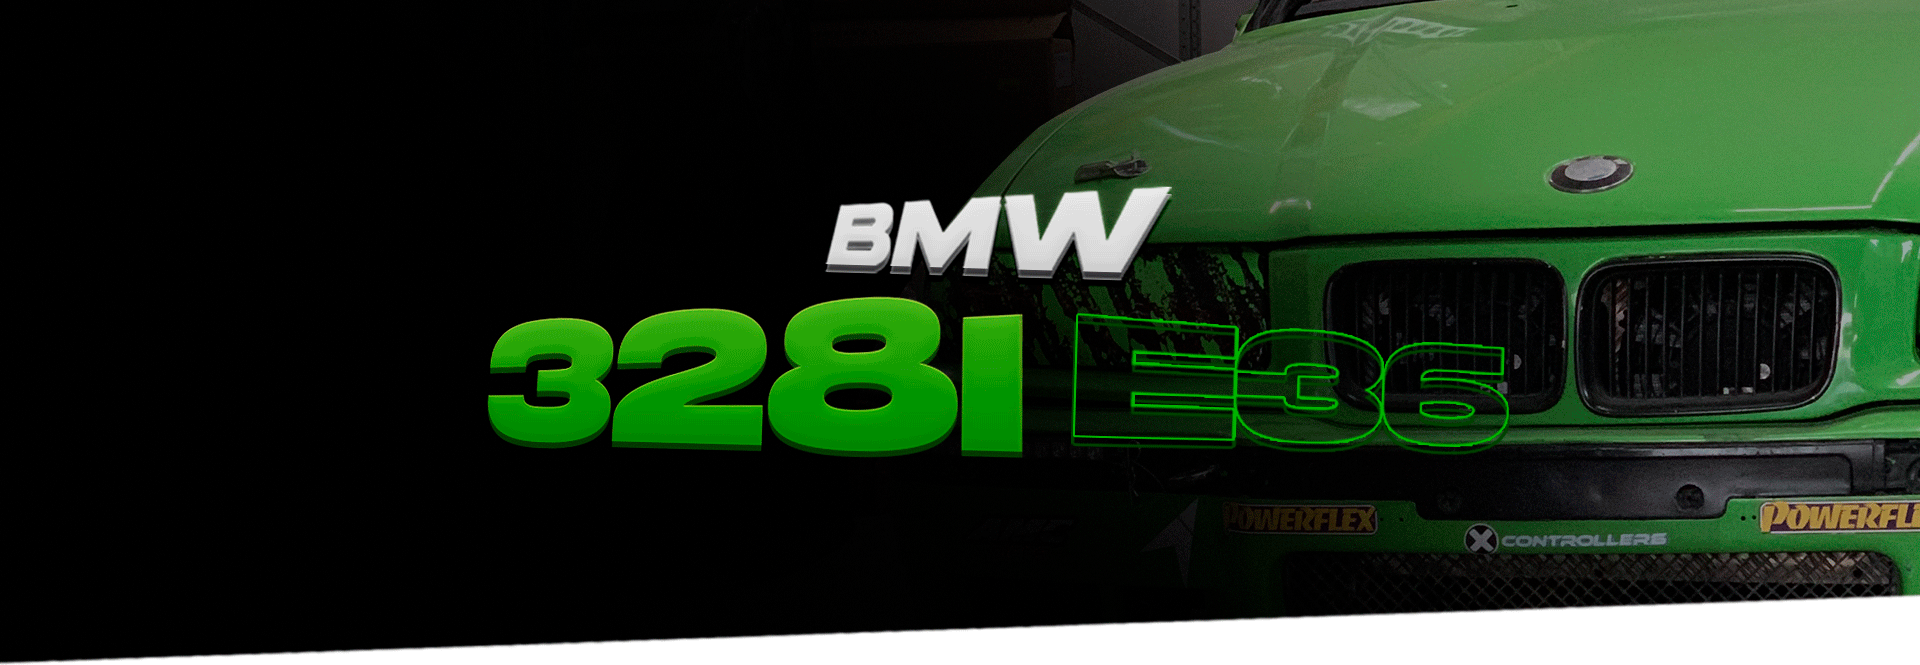 bmw-328i